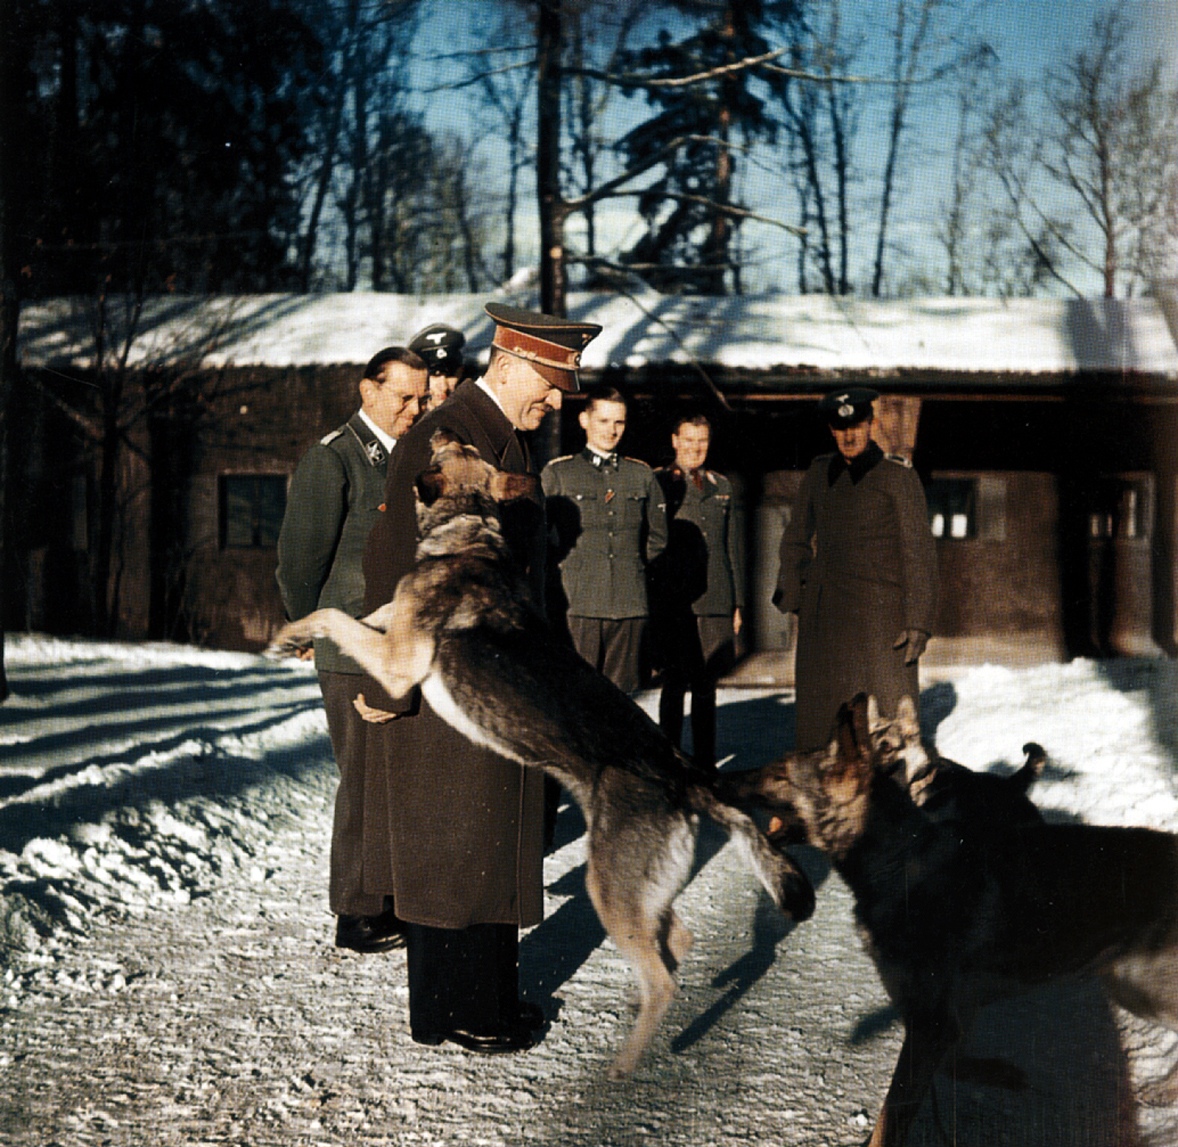 Идиллический снимок - Адольф Гитлер и немецкие офицеры выгуливают собак в ставке Растенбург (Rastenburg). Зима 1942-1943 годов.